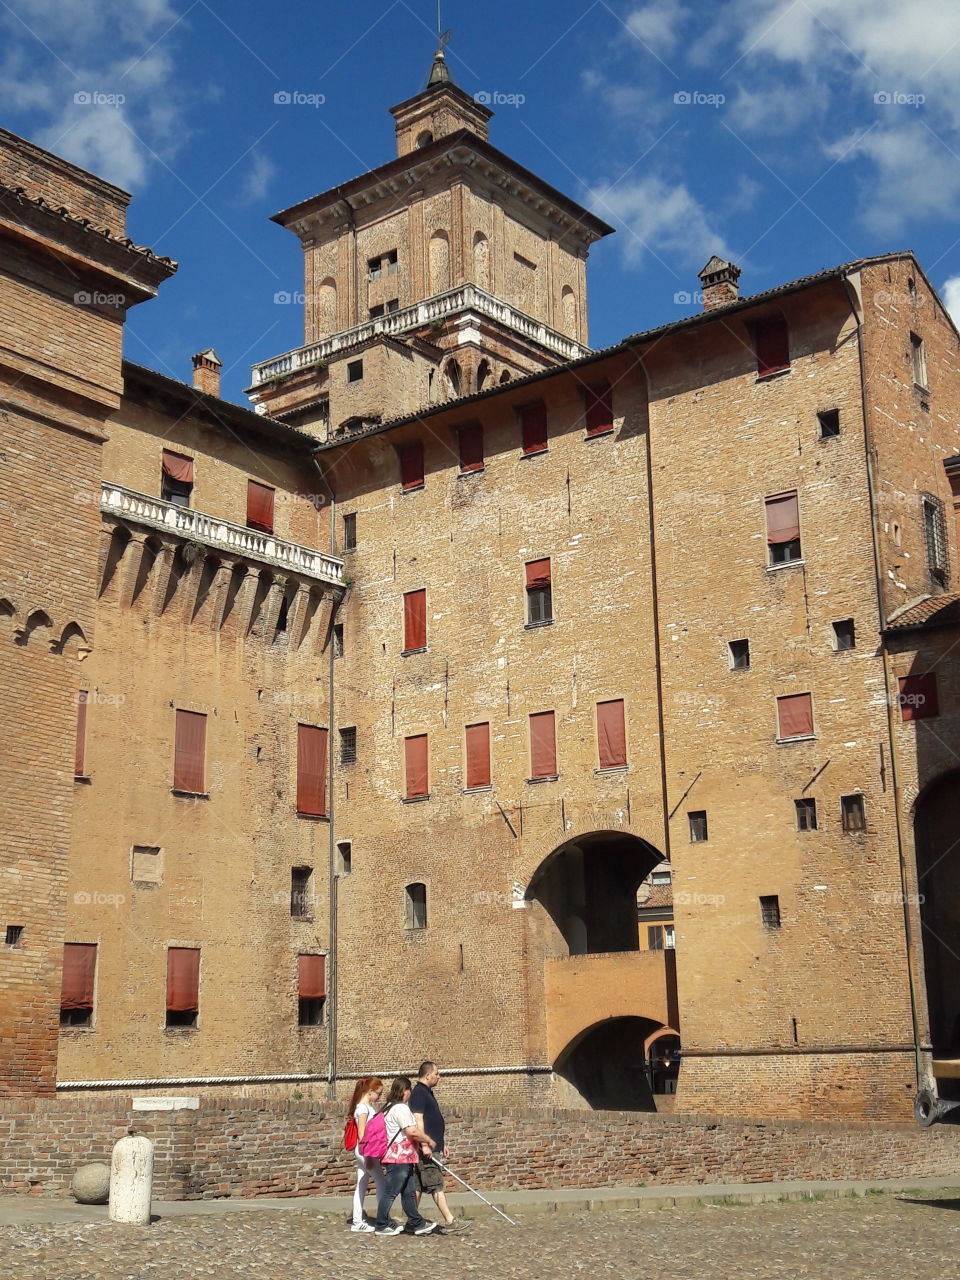 castle of Ferrara